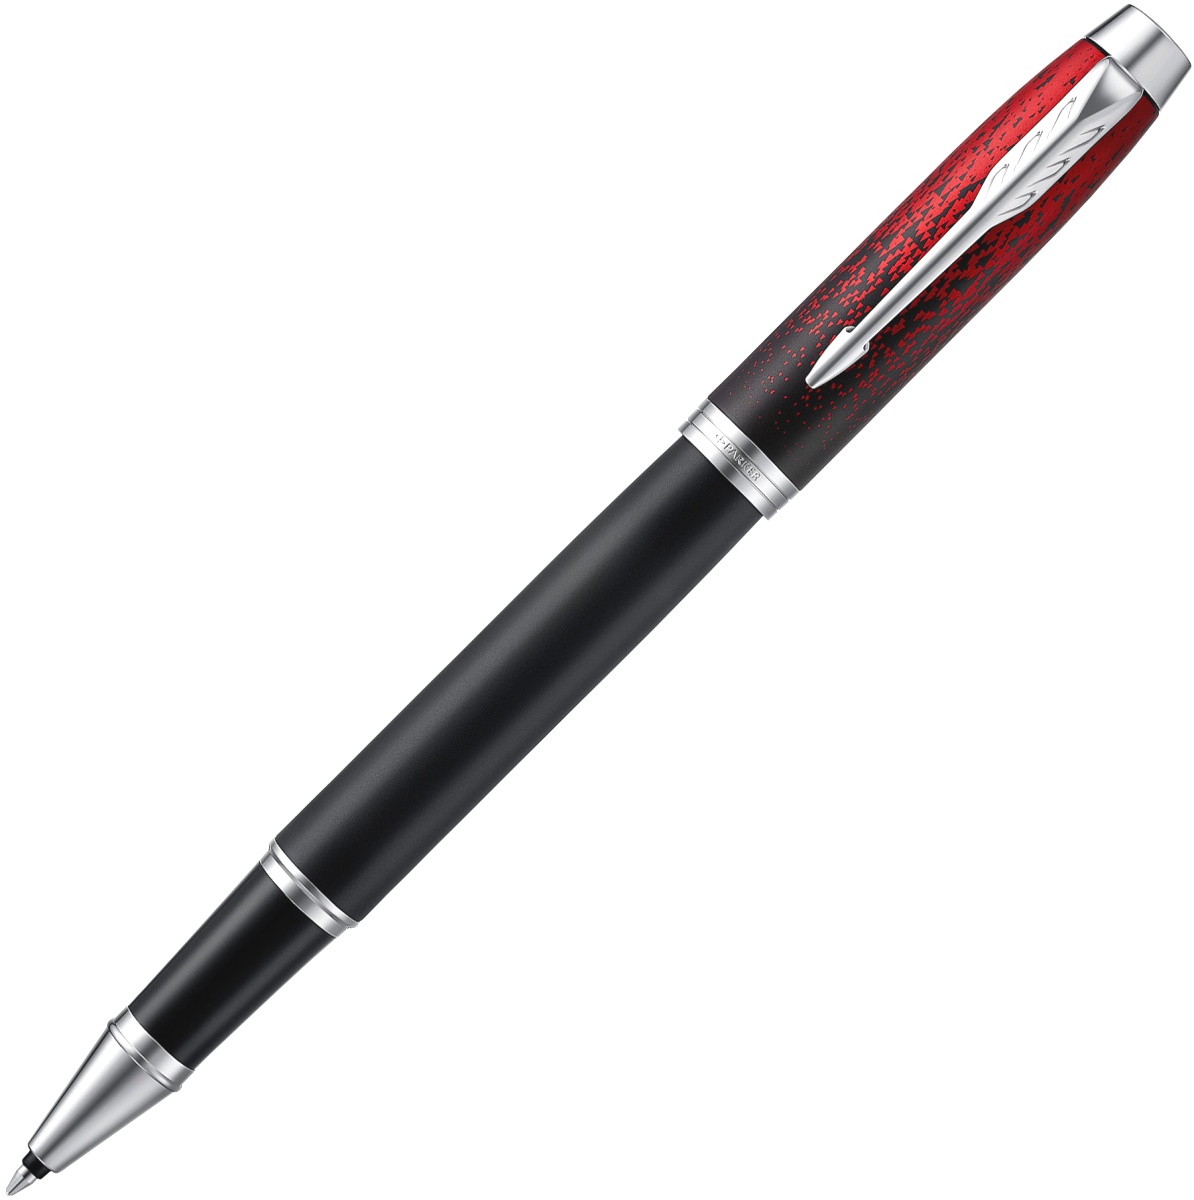  Ручка-роллер Parker IM Core 2019 SE T320, Red Ignite